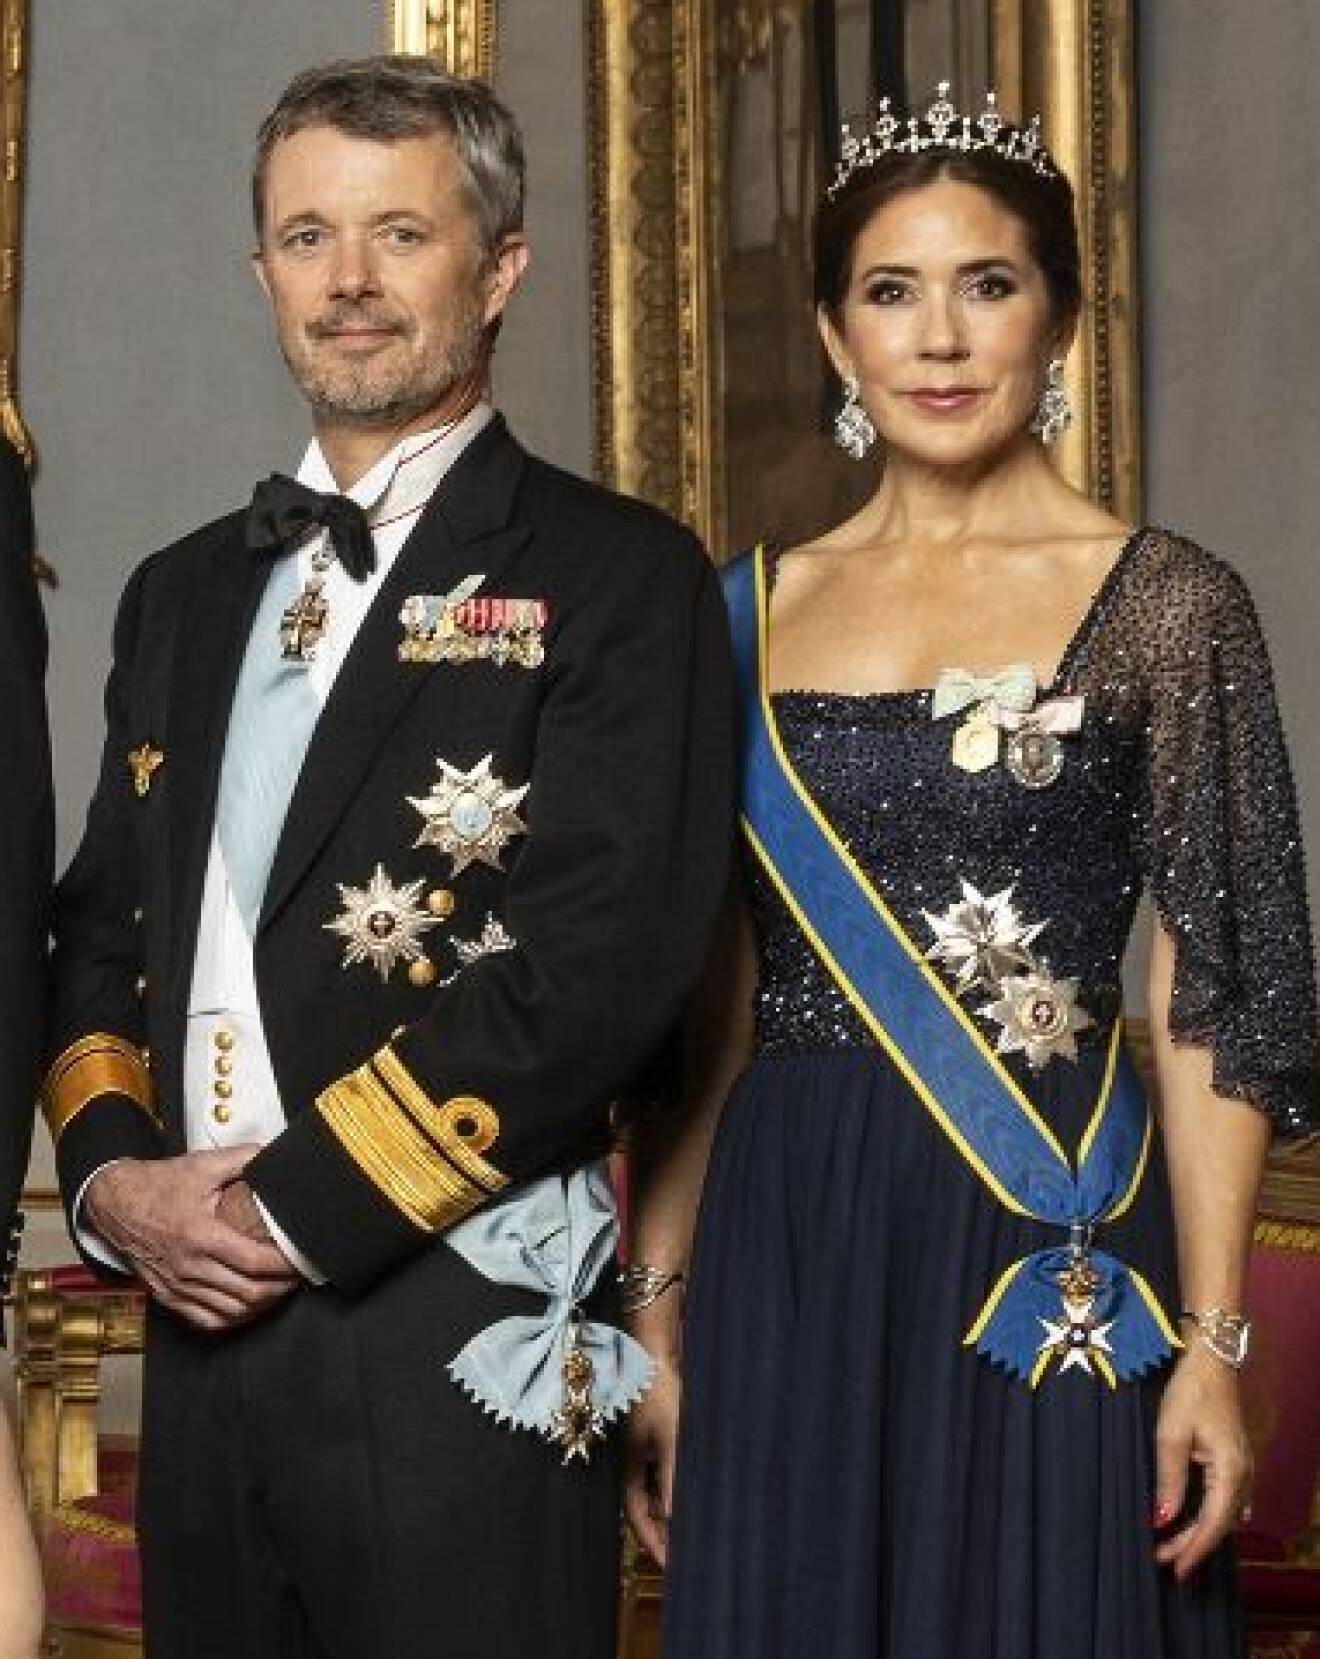 Kronprins Frederik och kronprinsessan Mary på middag på Stockholms slott – kungen 50 år på tronen